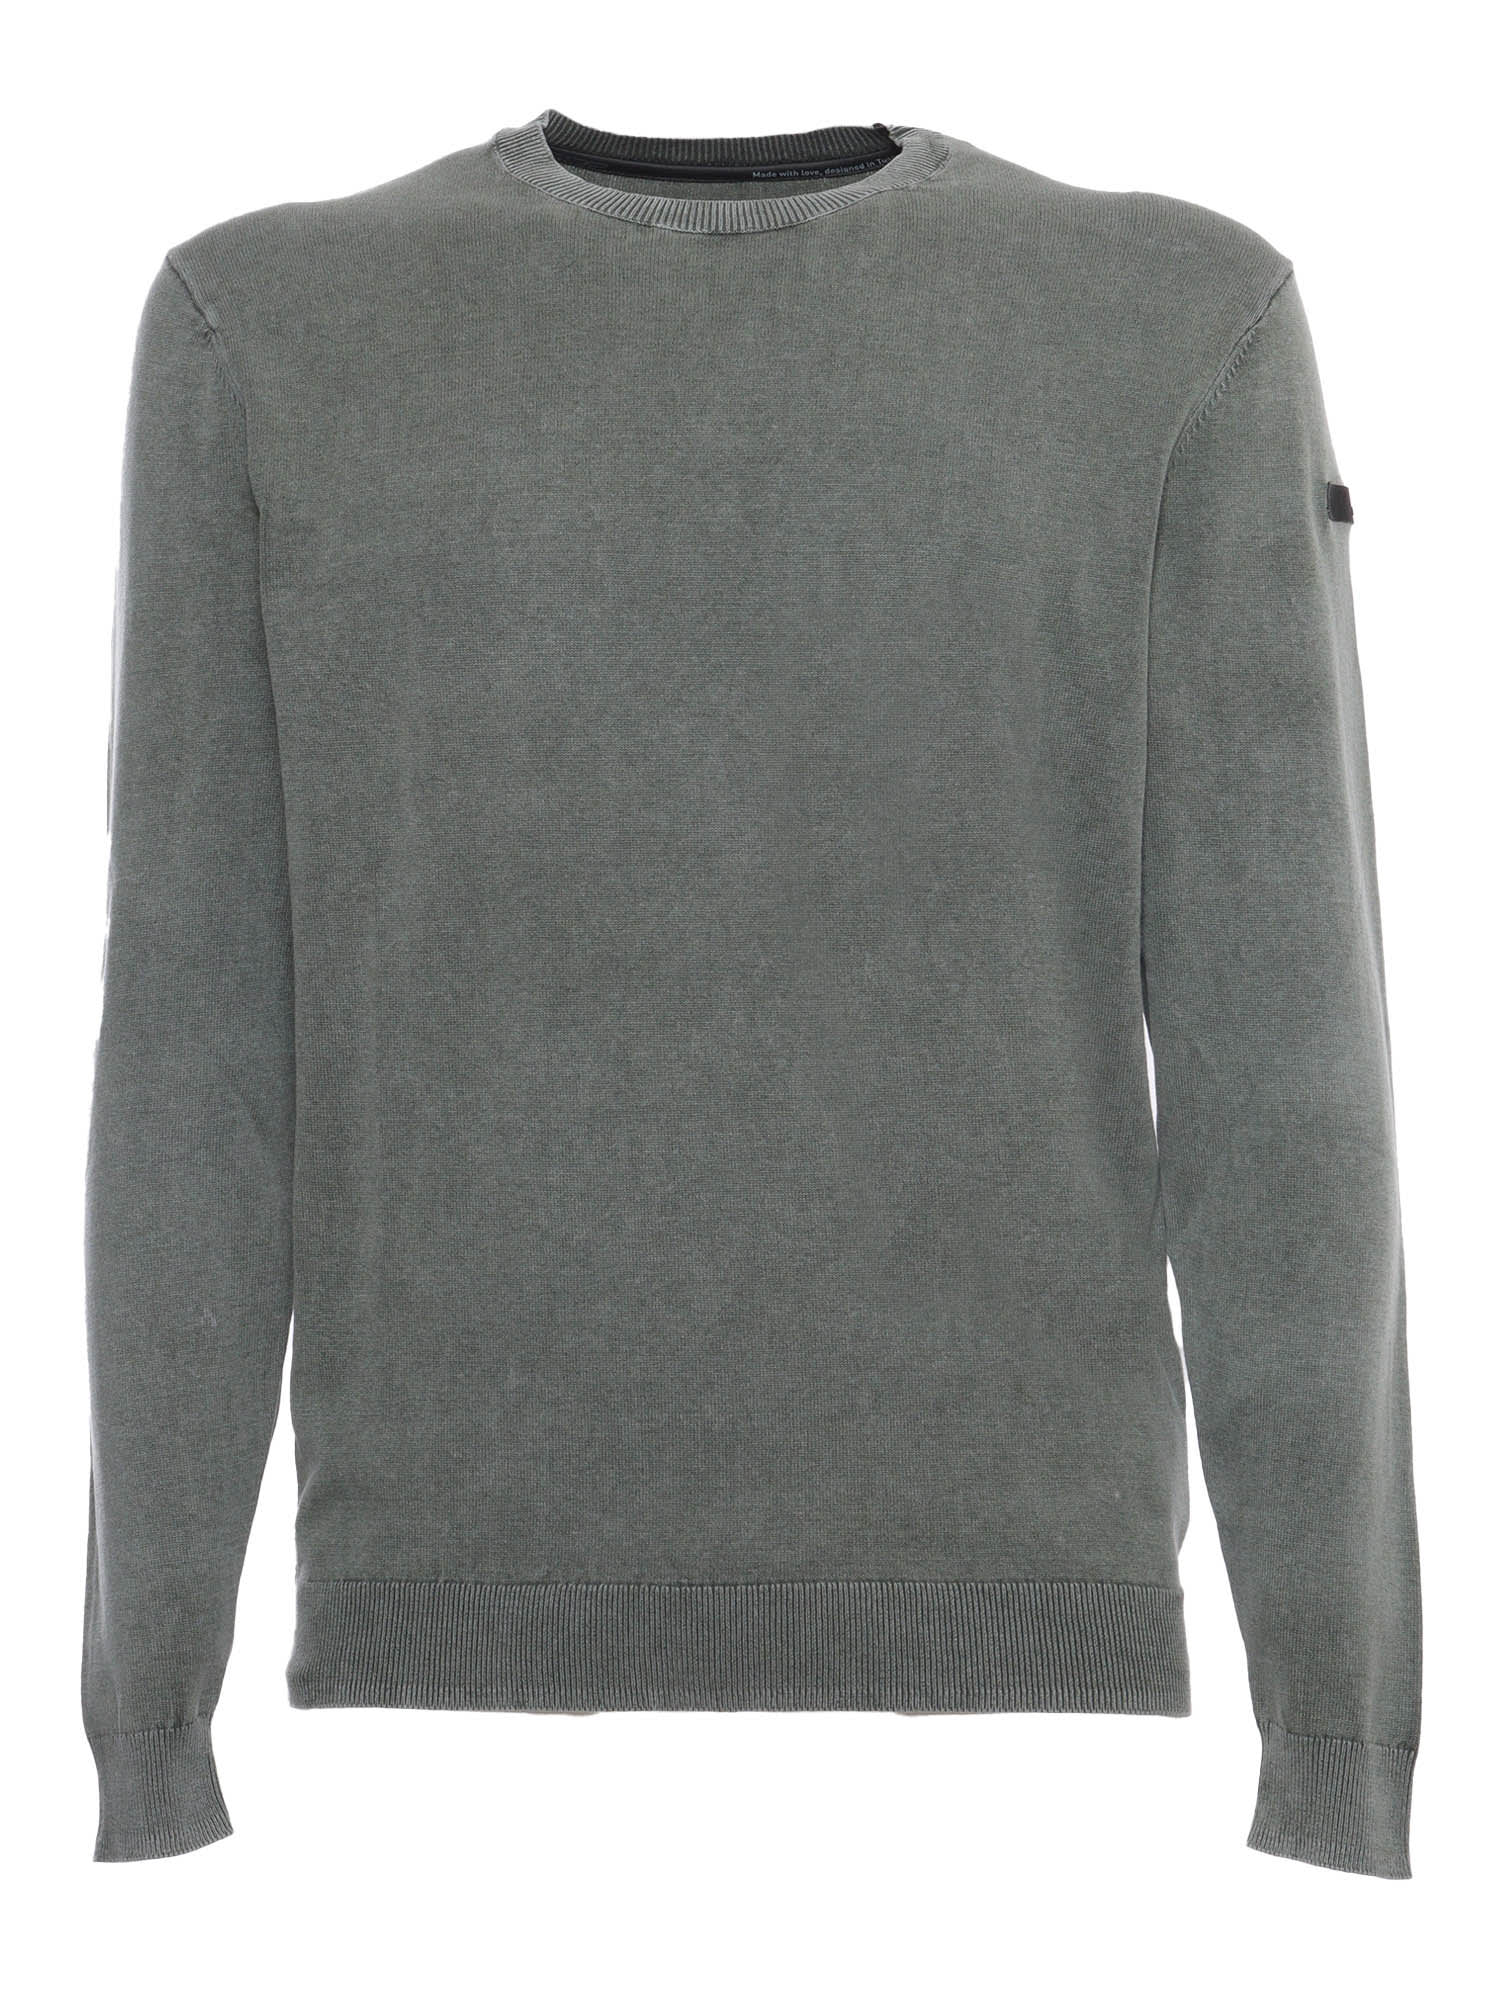 Shop Rrd - Roberto Ricci Design Green Techno Sweater